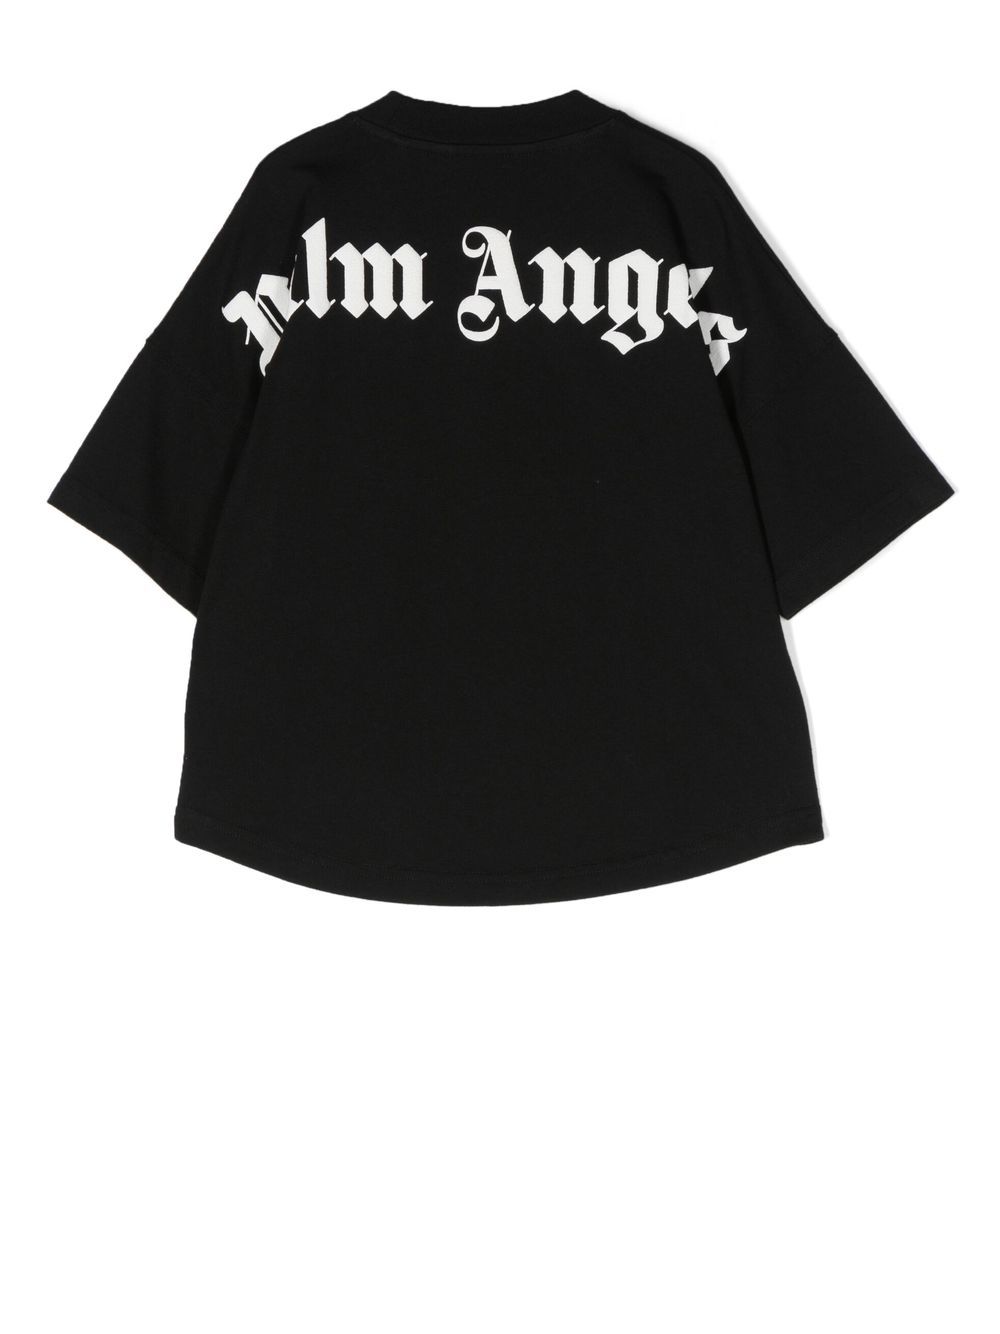 Palm Angels Kids T-shirt met logoprint - Zwart